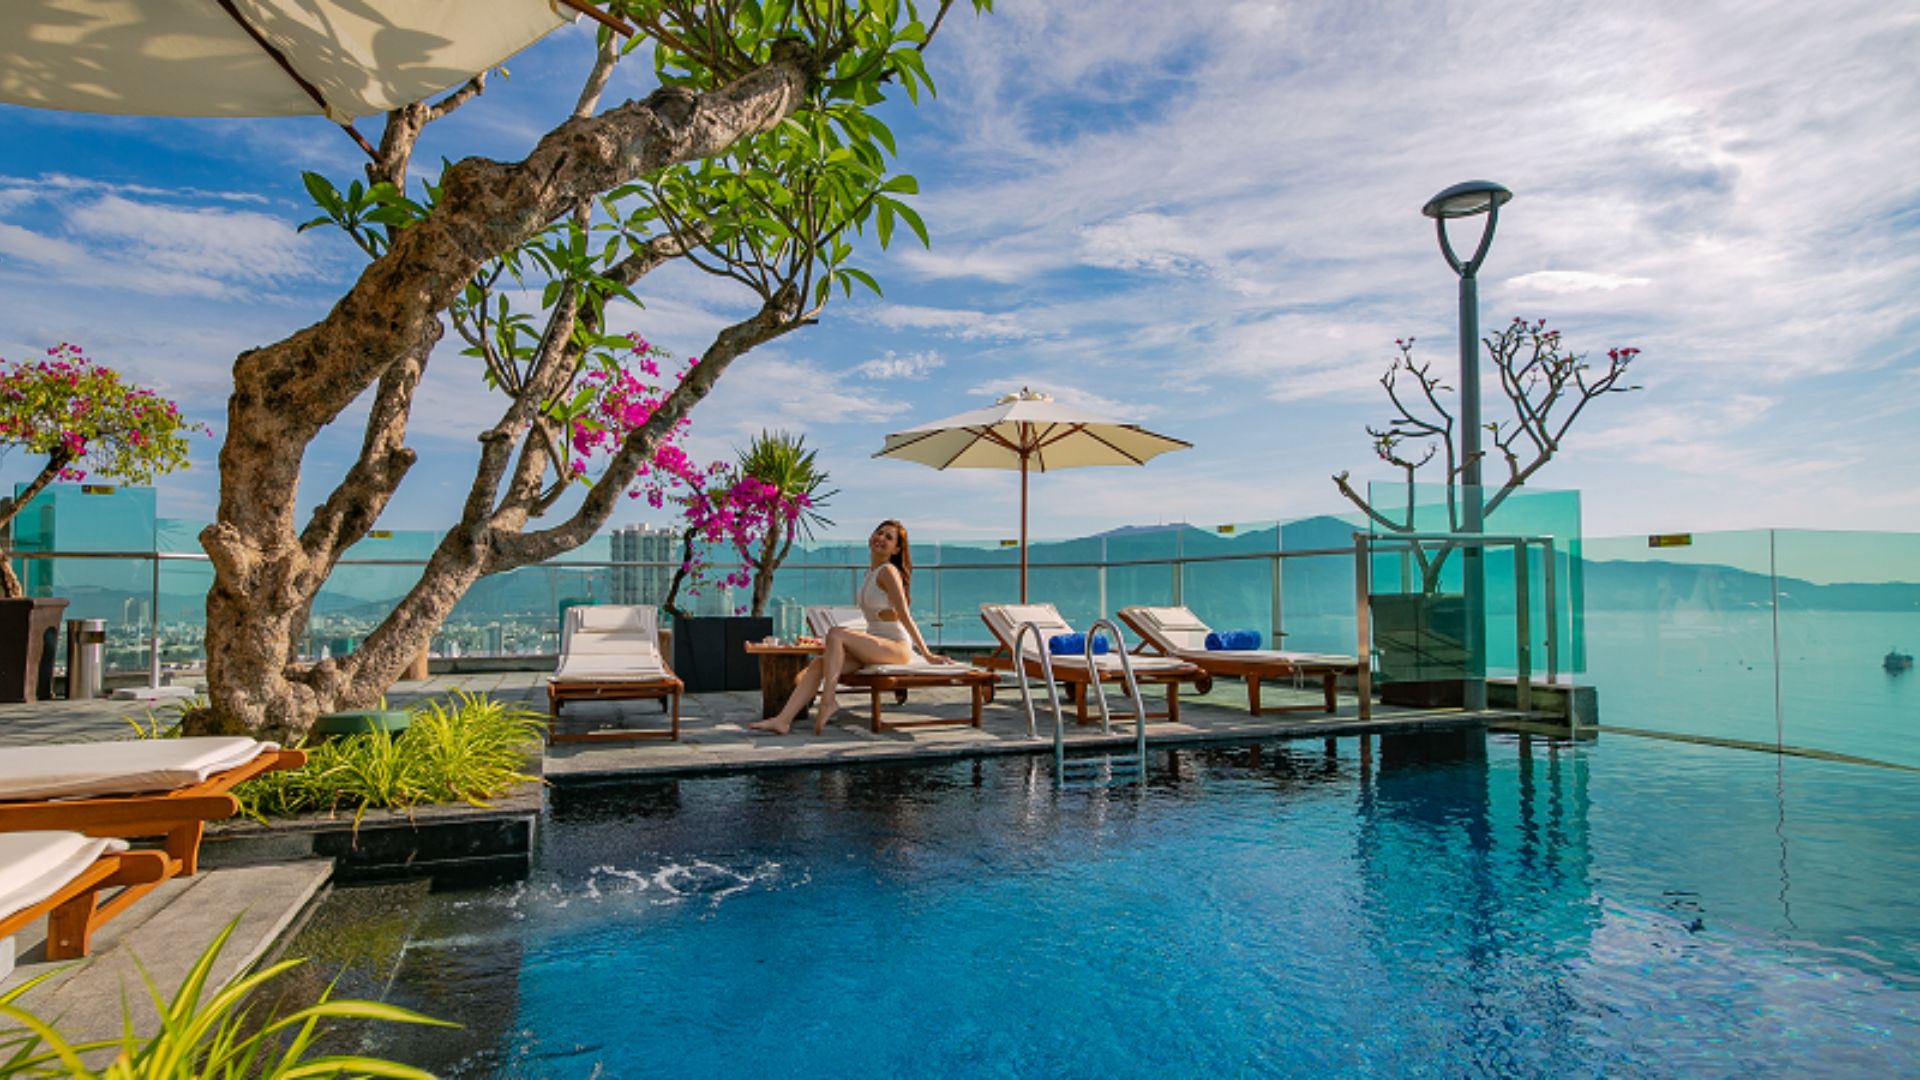 Sala Danang Beach Hotel - Khách sạn Đà Nẵng gần biển